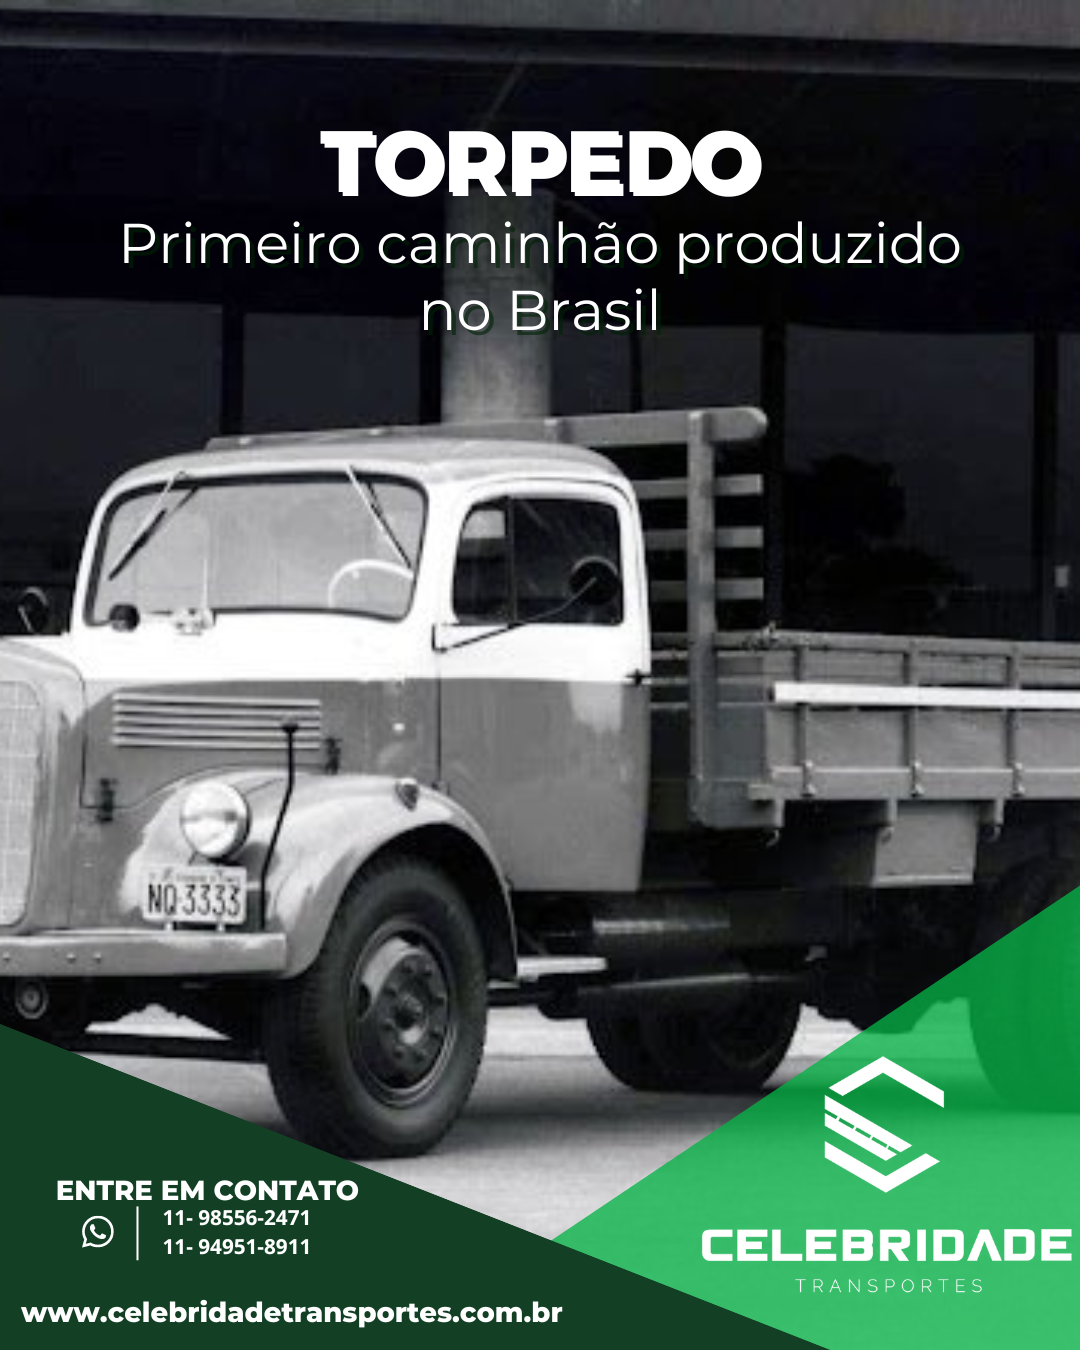 Imagem O caminhão torpedo ocupa um lugar especial na história automotiva do Brasil como o primeiro caminhão produzido em território nacional.